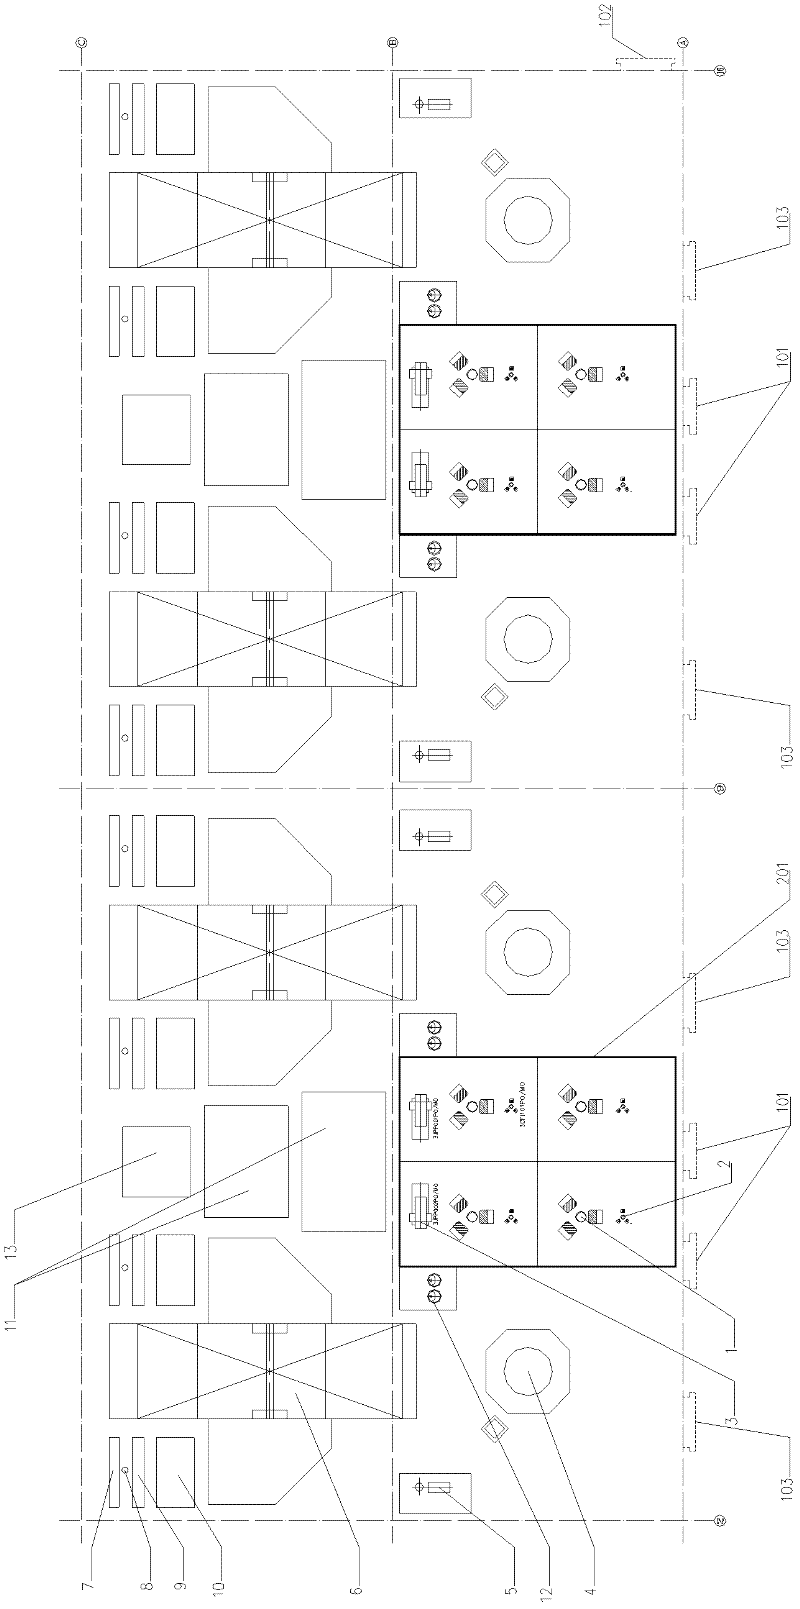 Combined pump room arrangement method